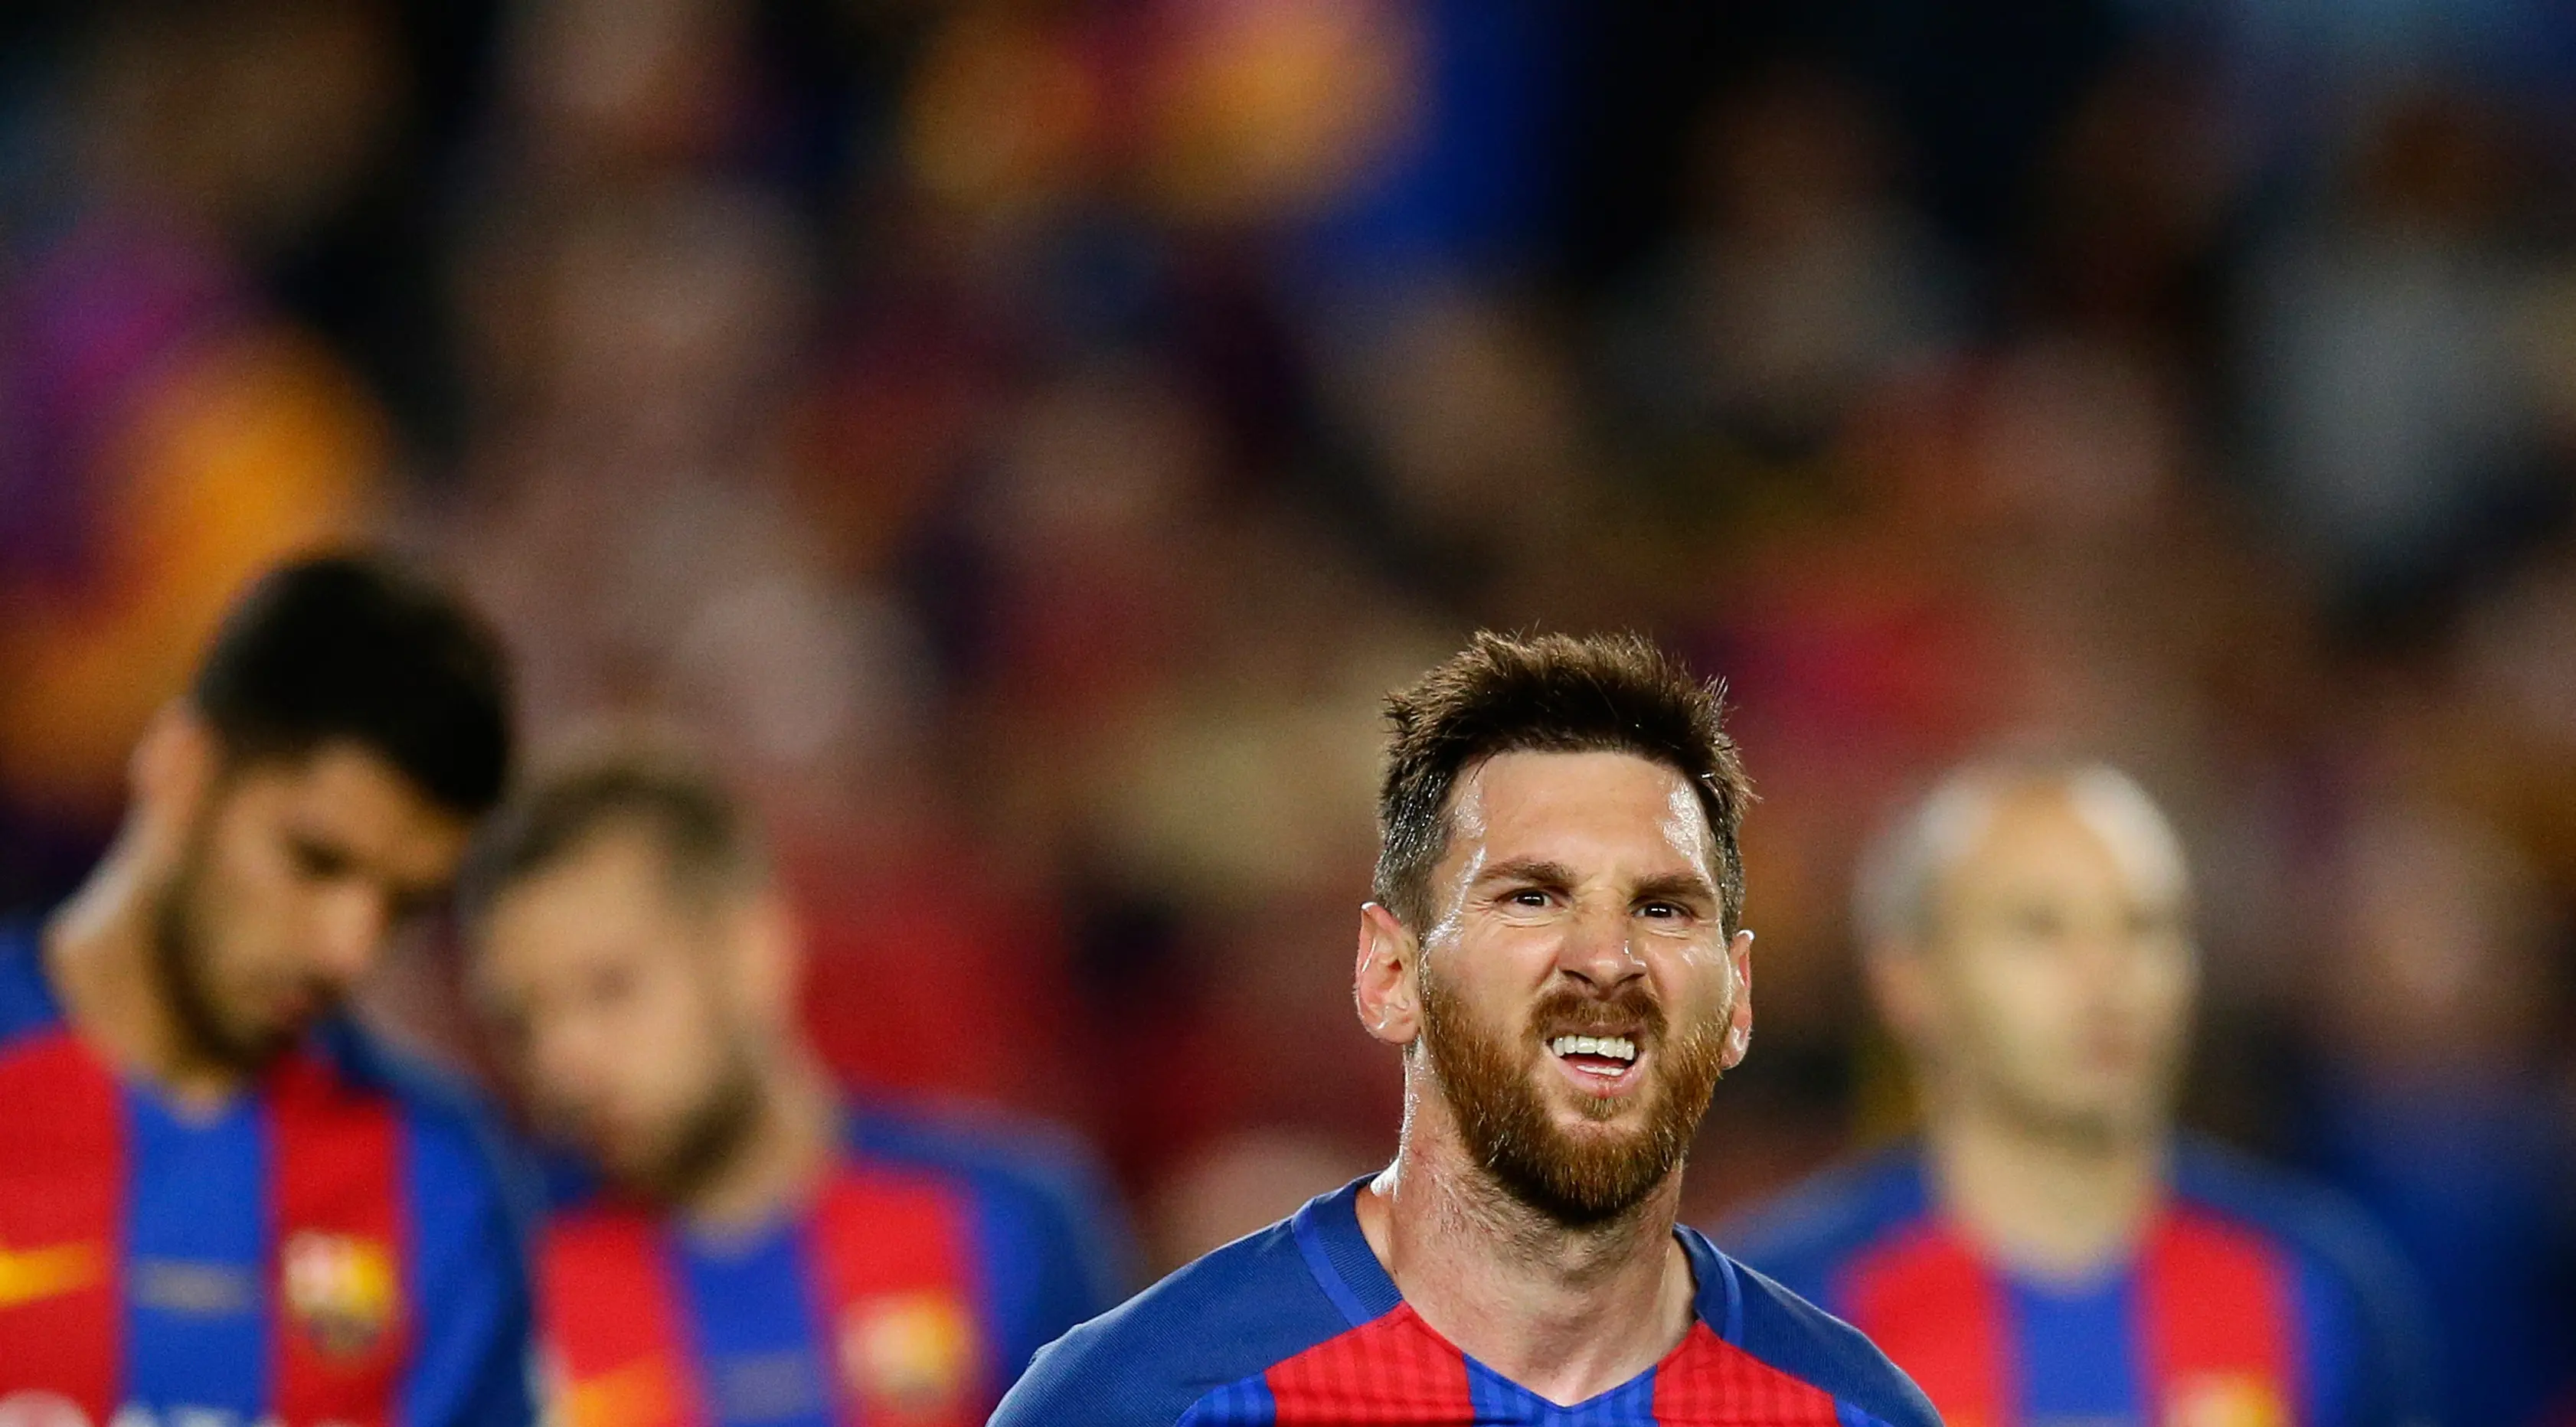 Ekspresi penyerang Barcelona, Lionel Messi usai pertandingan melawan Eibar di stadion Camp Nou, Barcelona, Spanyol,(21/5). Dalam pertandingan ini Messi mencetak dua gol dan mengantar Barcelona menang 4-2 atas Eibar. (AP Photo / Manu Fernandez)